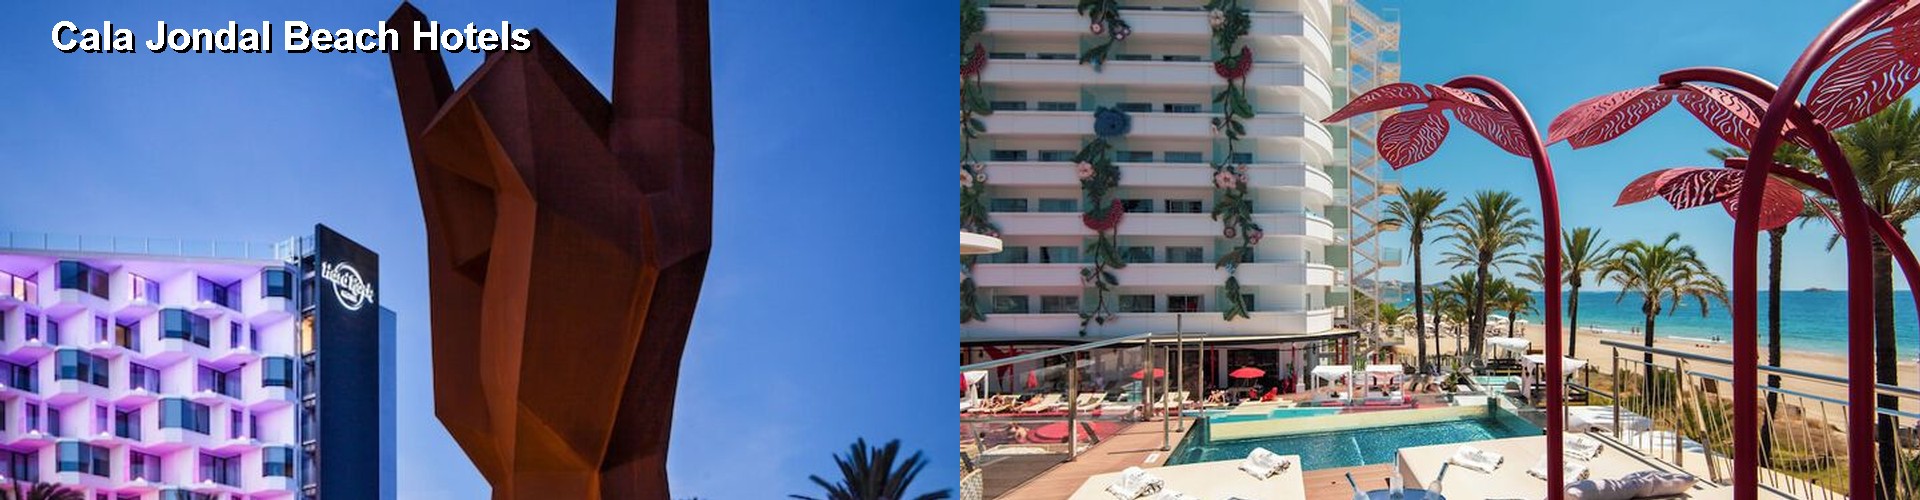 5 Best Hotels near Cala Jondal Beach